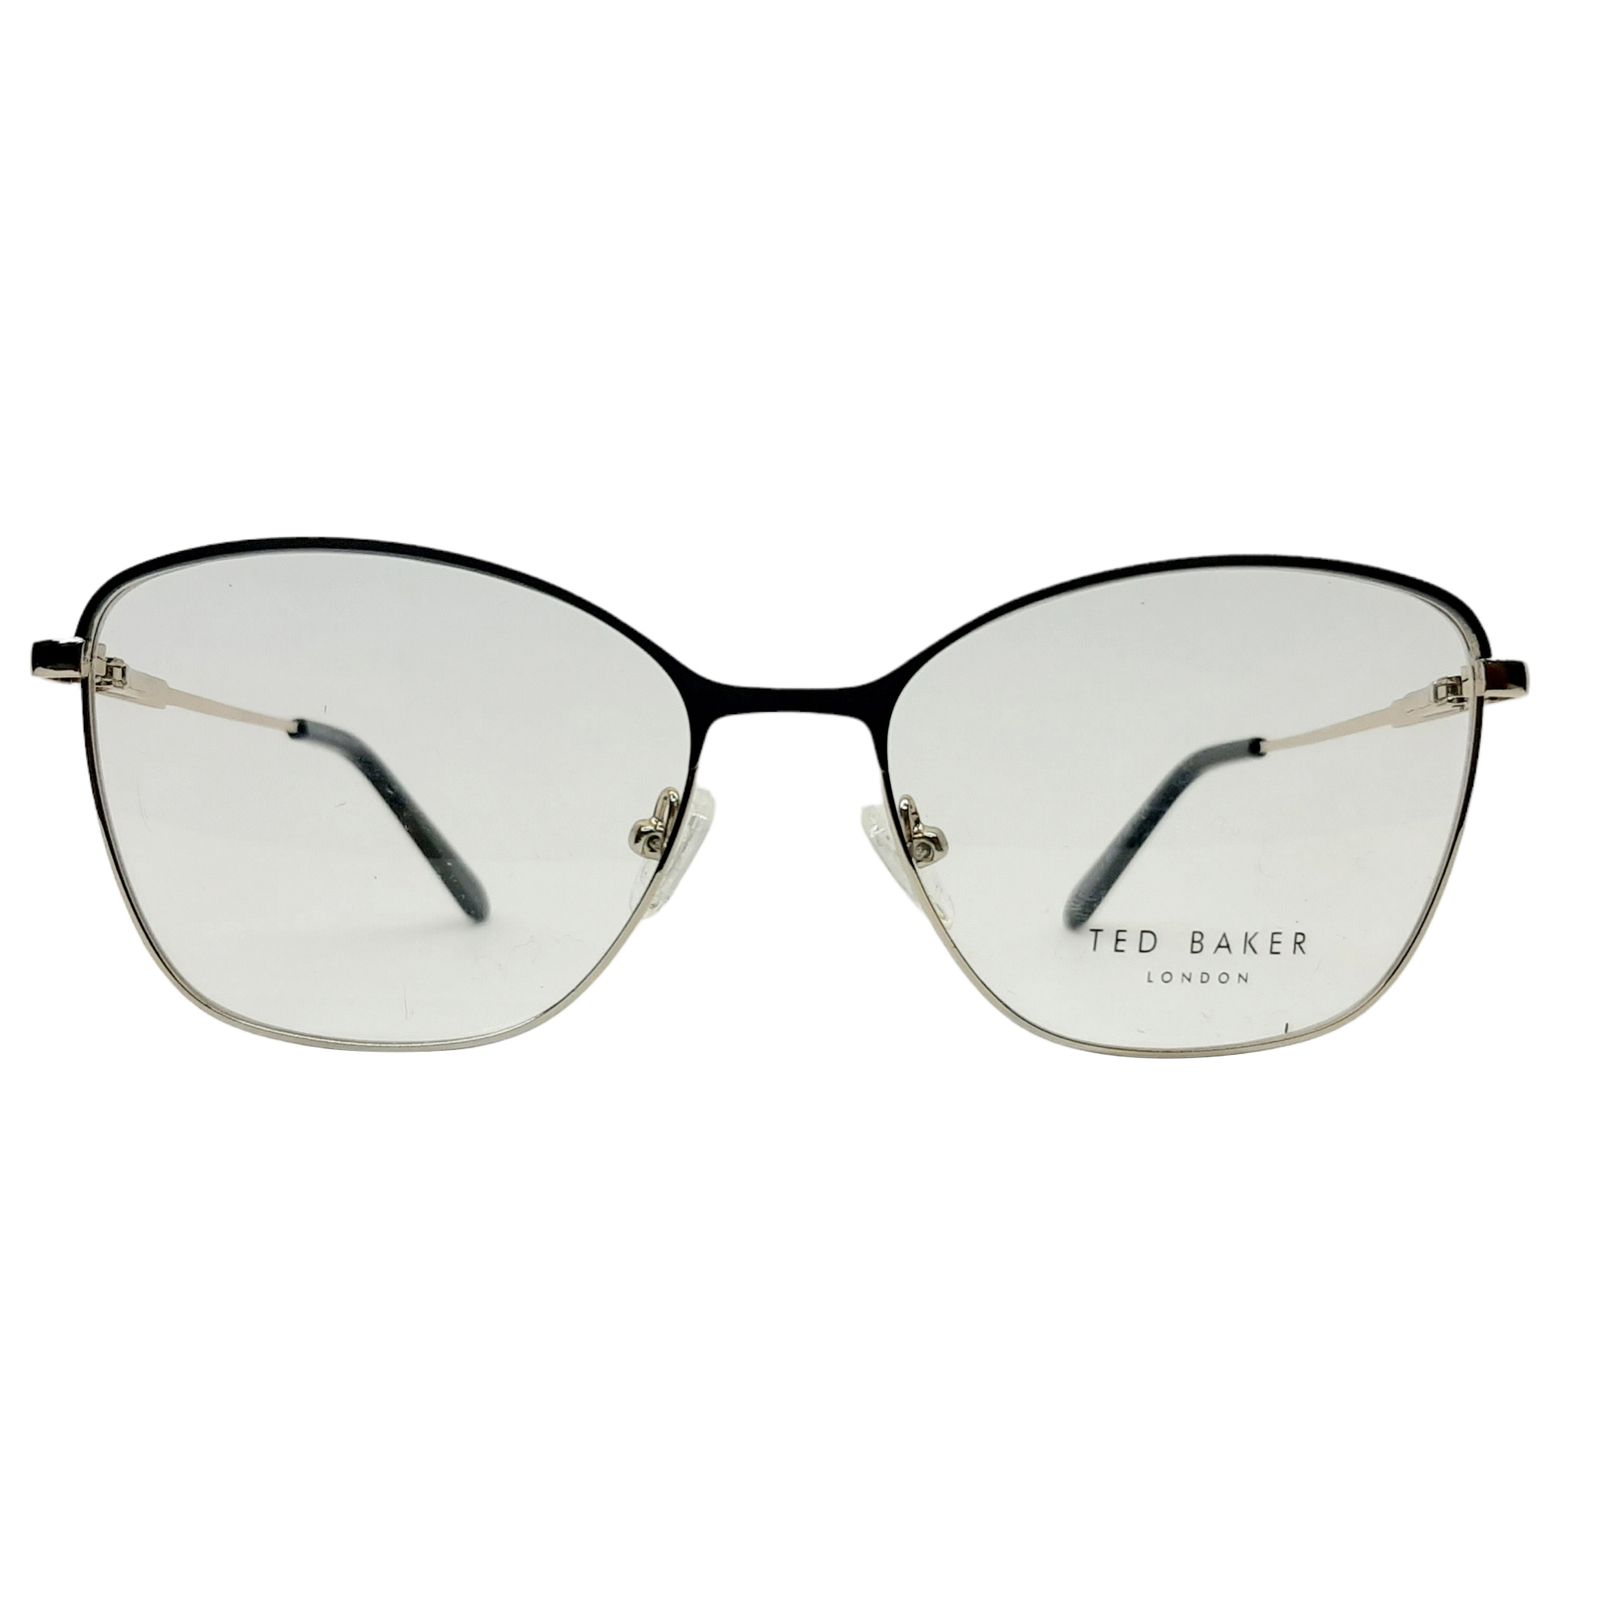 فریم عینک طبی زنانه تد بیکر مدل XC62012c1